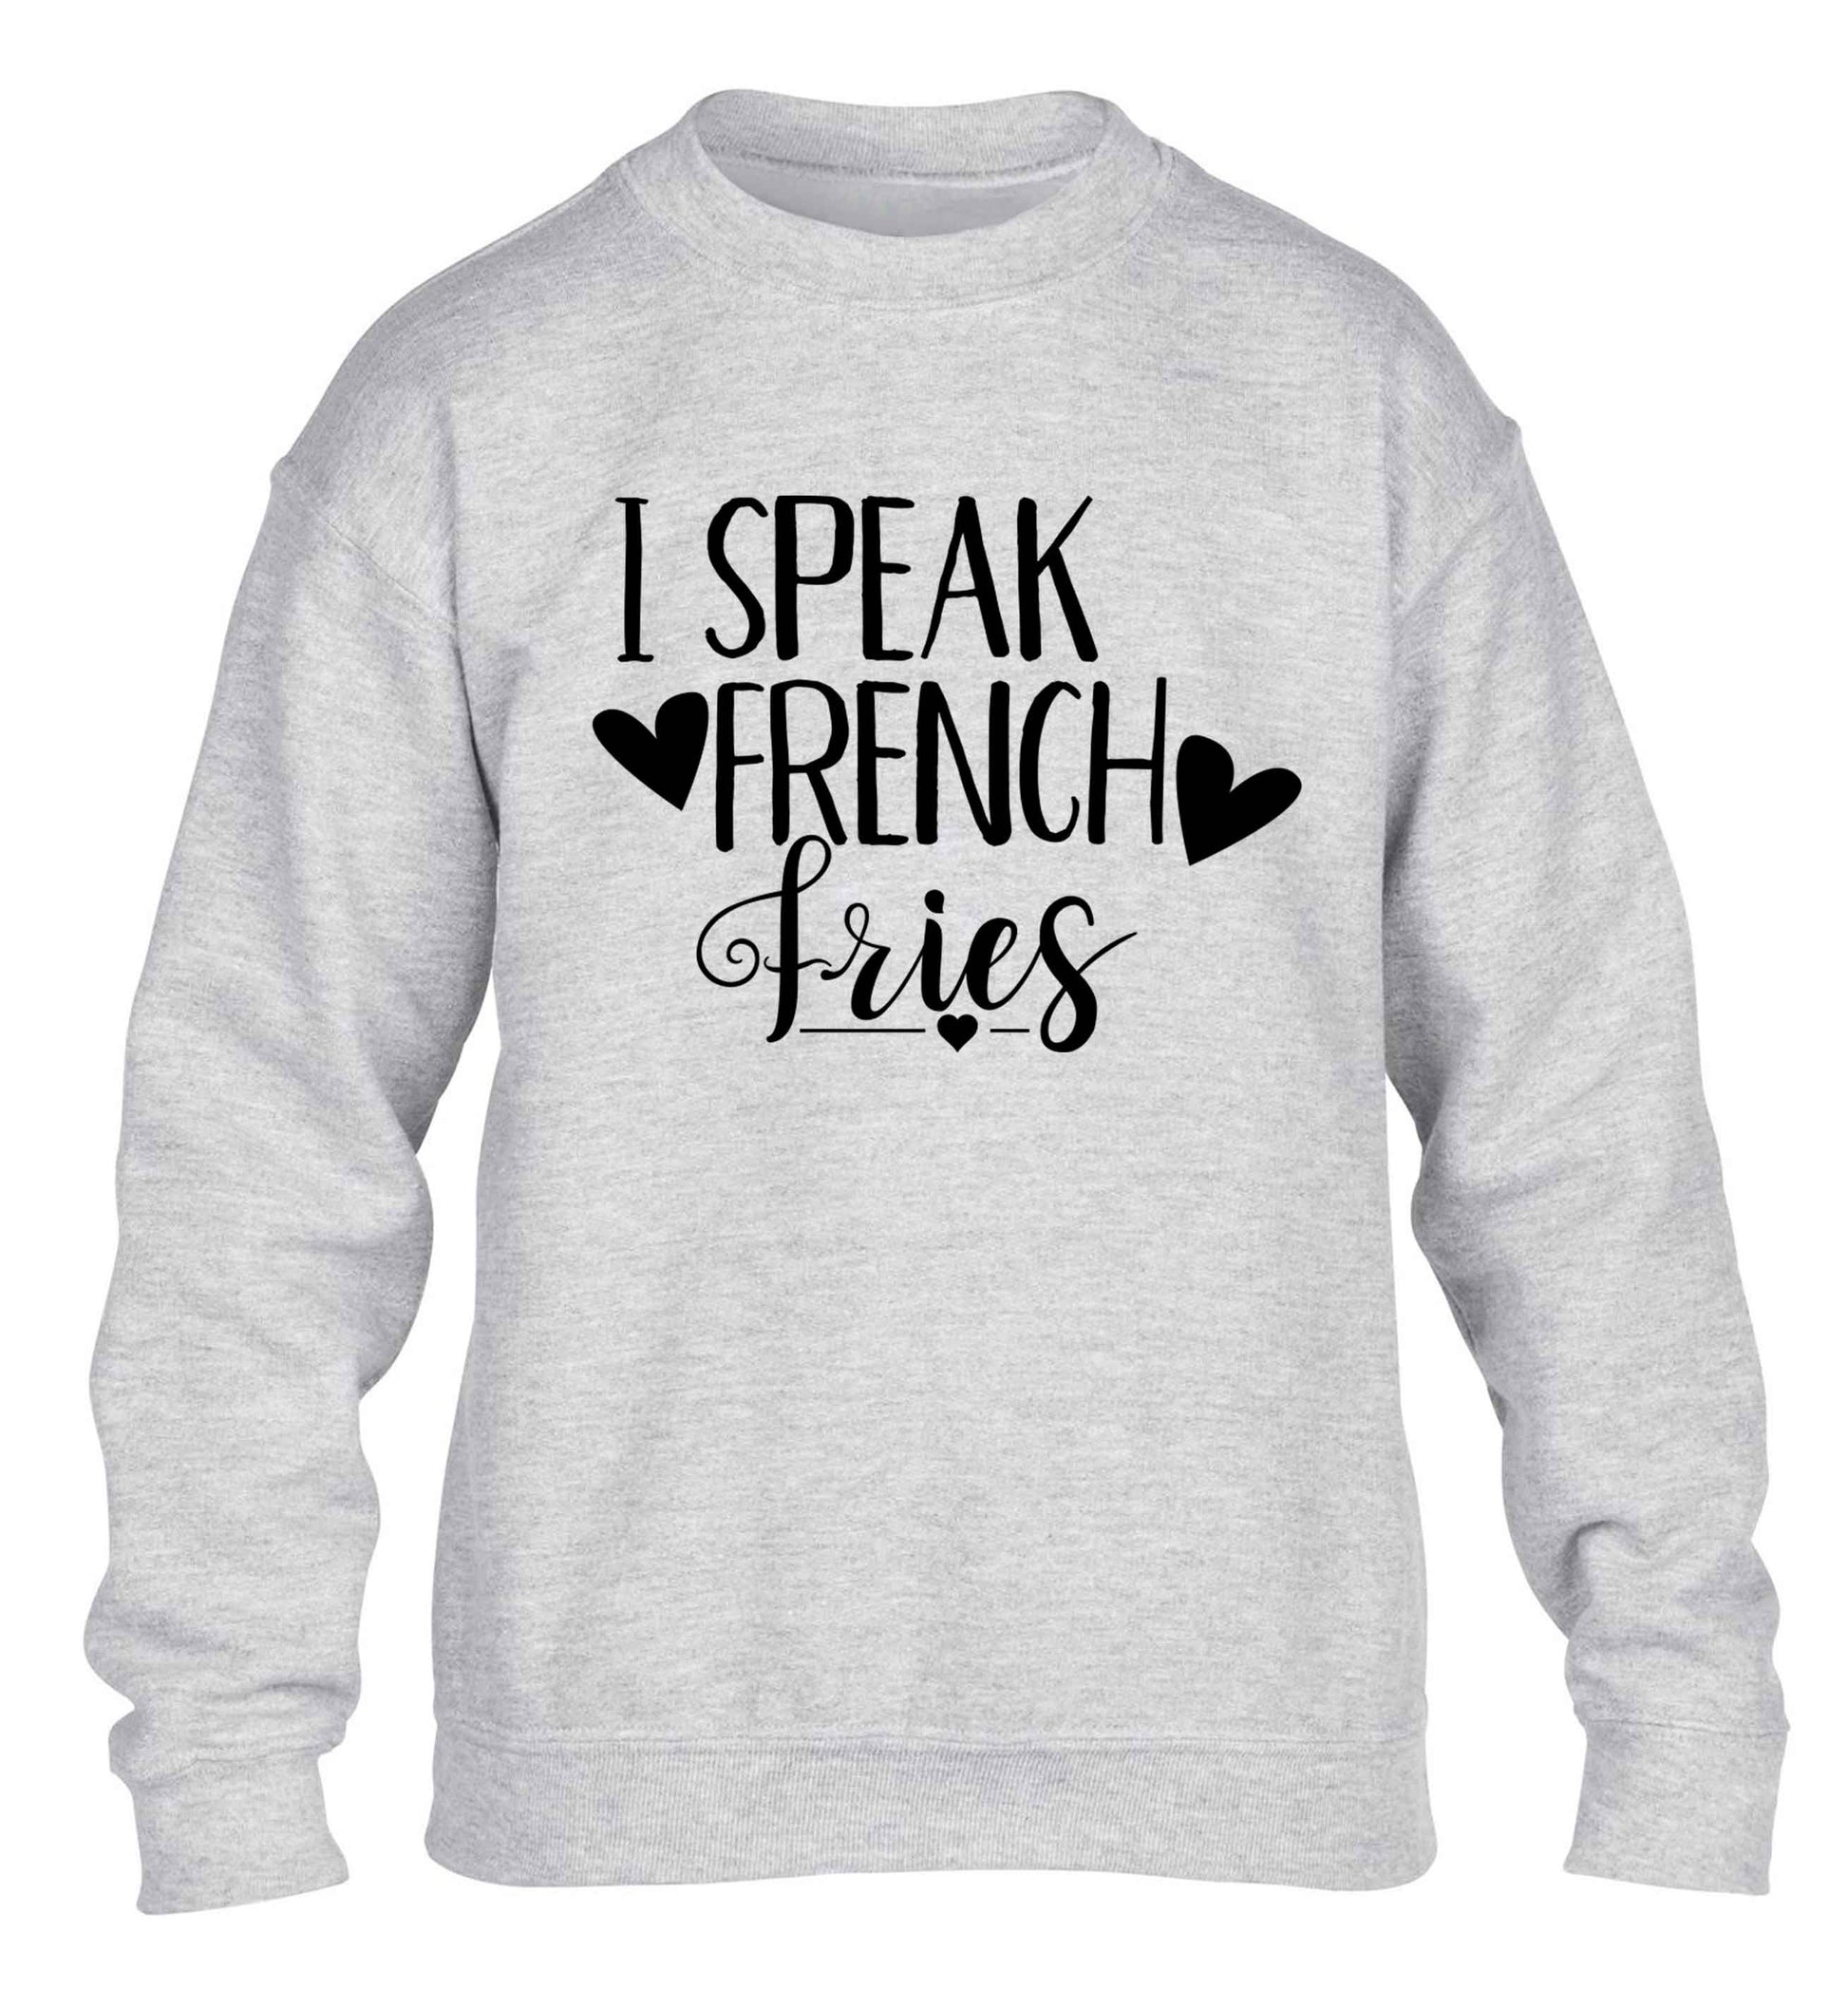 I speak French fries children's grey sweater 12-13 Years